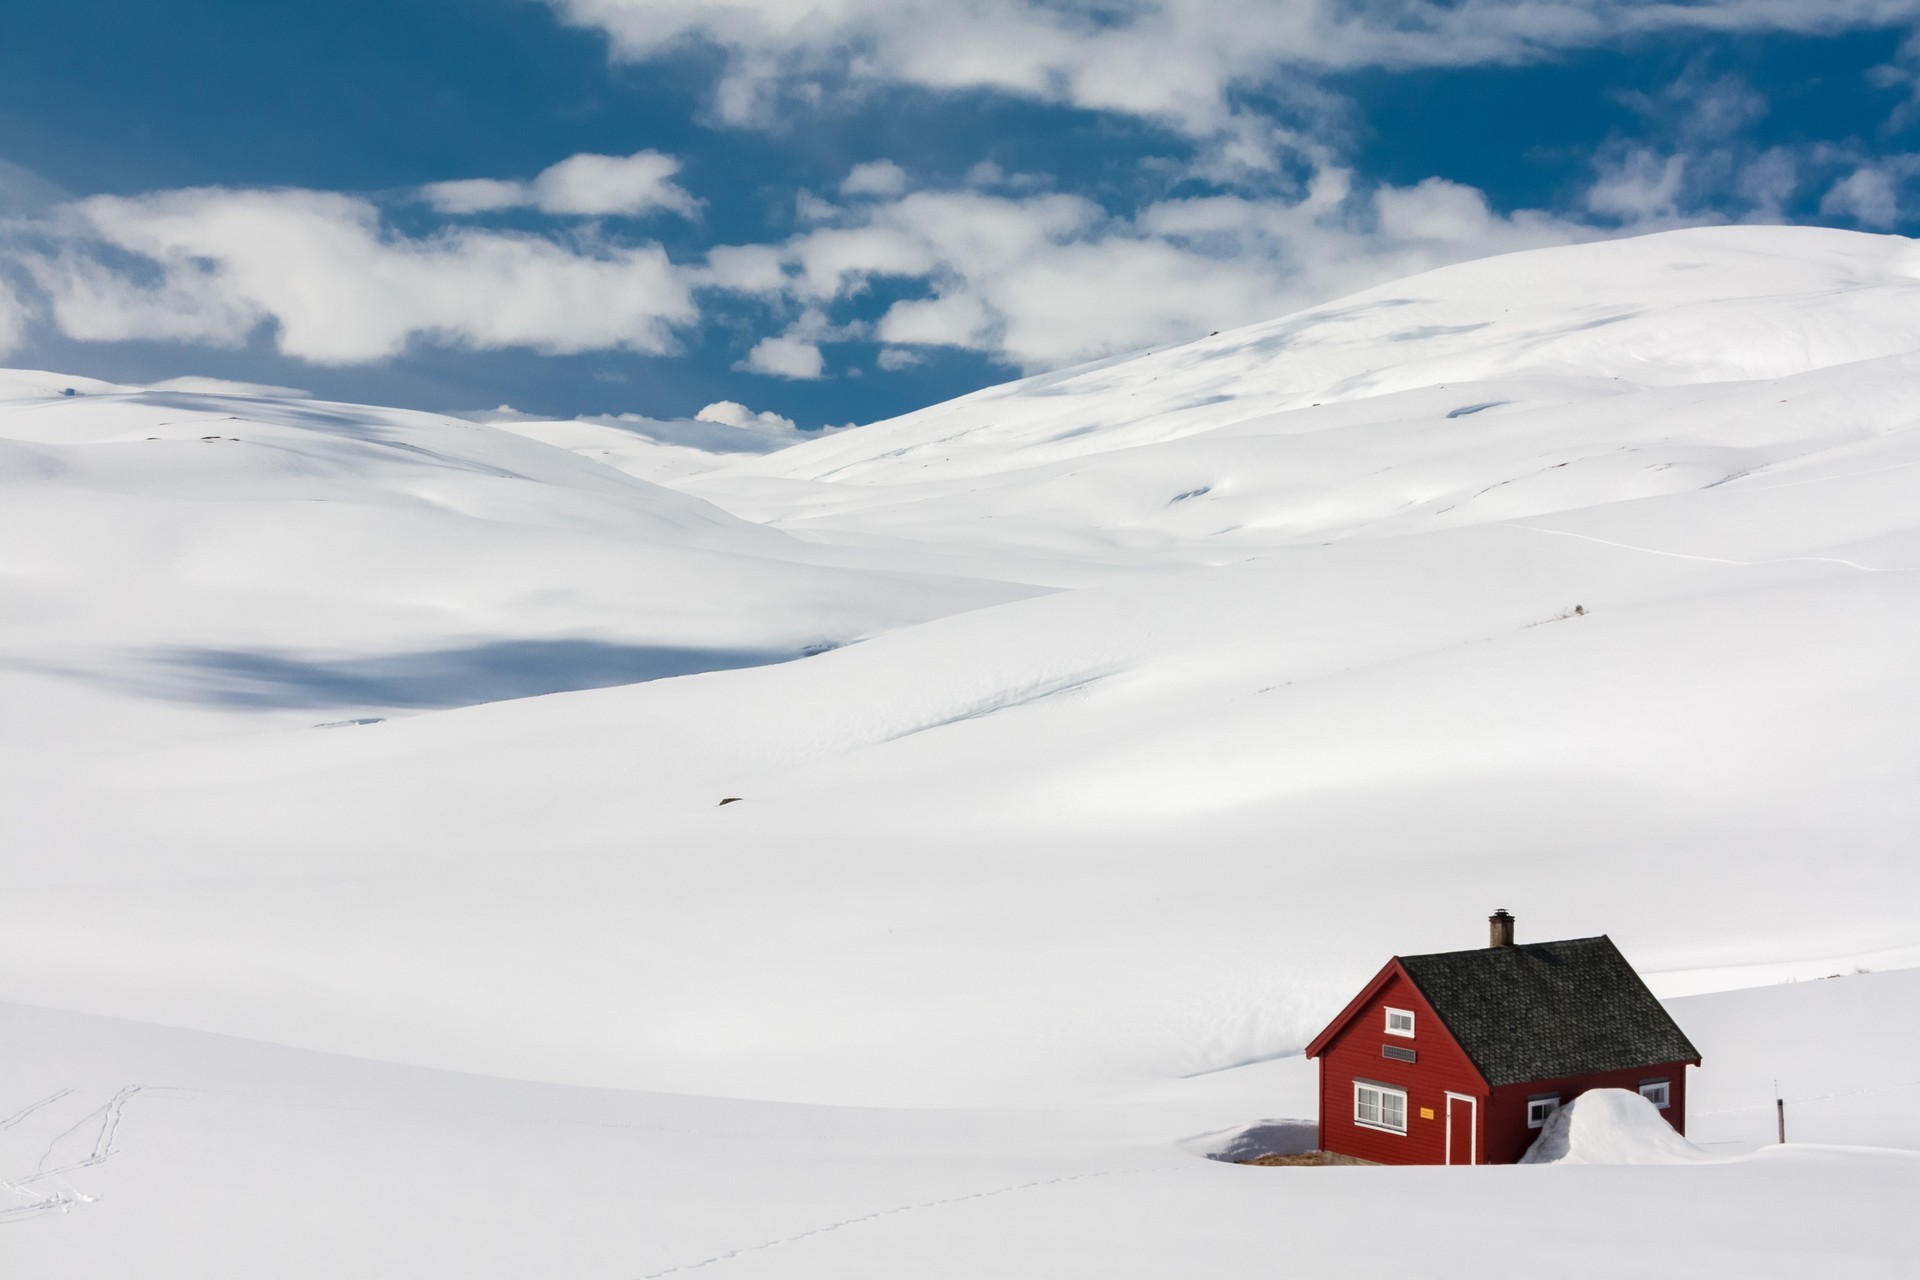 General 1920x1280 landscape snow hut house white nature